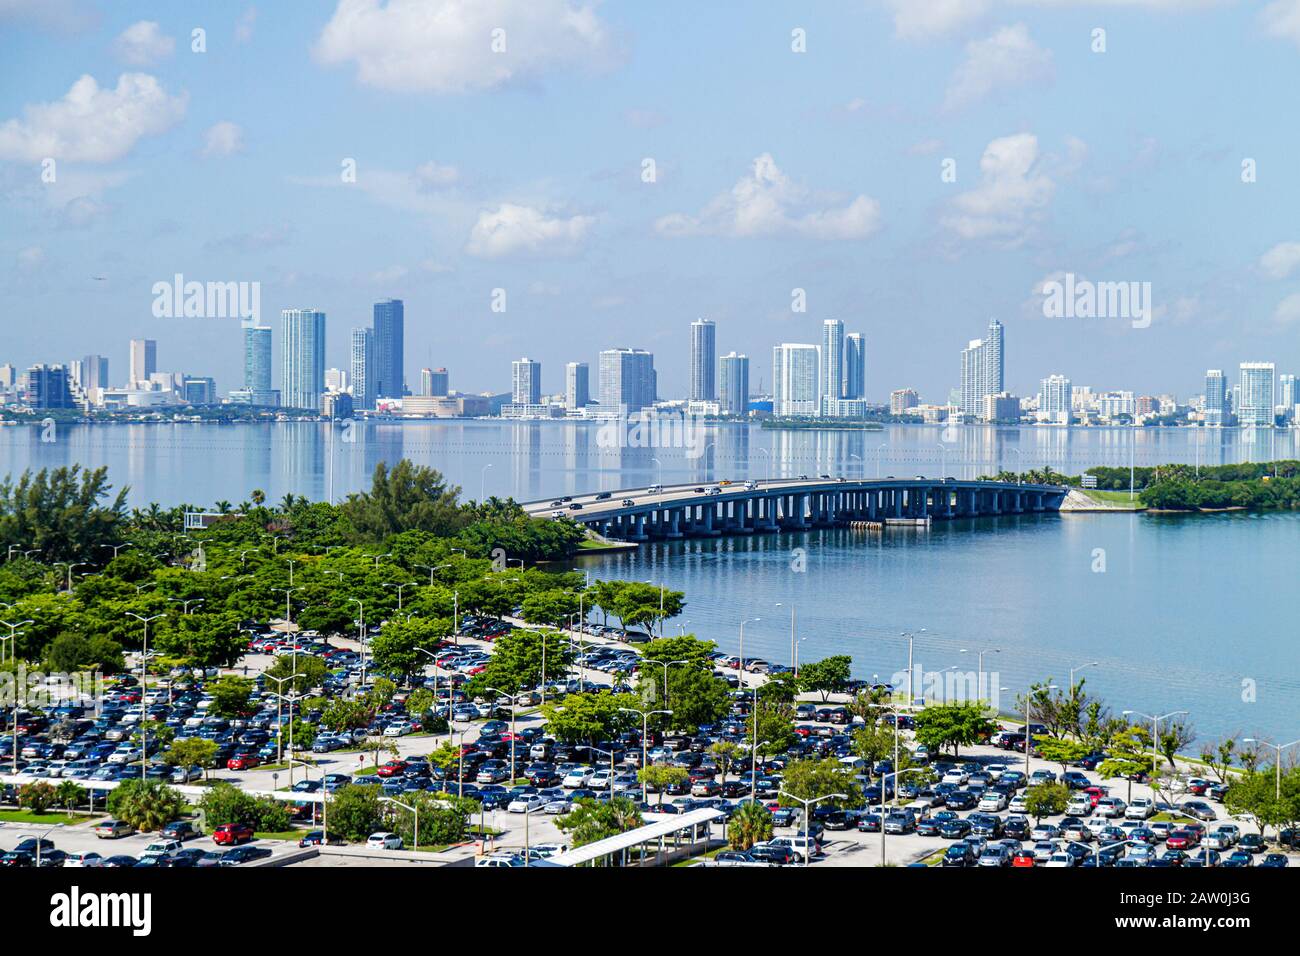 Miami Beach Florida, Biscayne Bay, Parkplatz, Autos, Julia Tuttle Causeway, Skyline, Hochhaus Wolkenkratzer Gebäude Wohnanlage Stockfoto